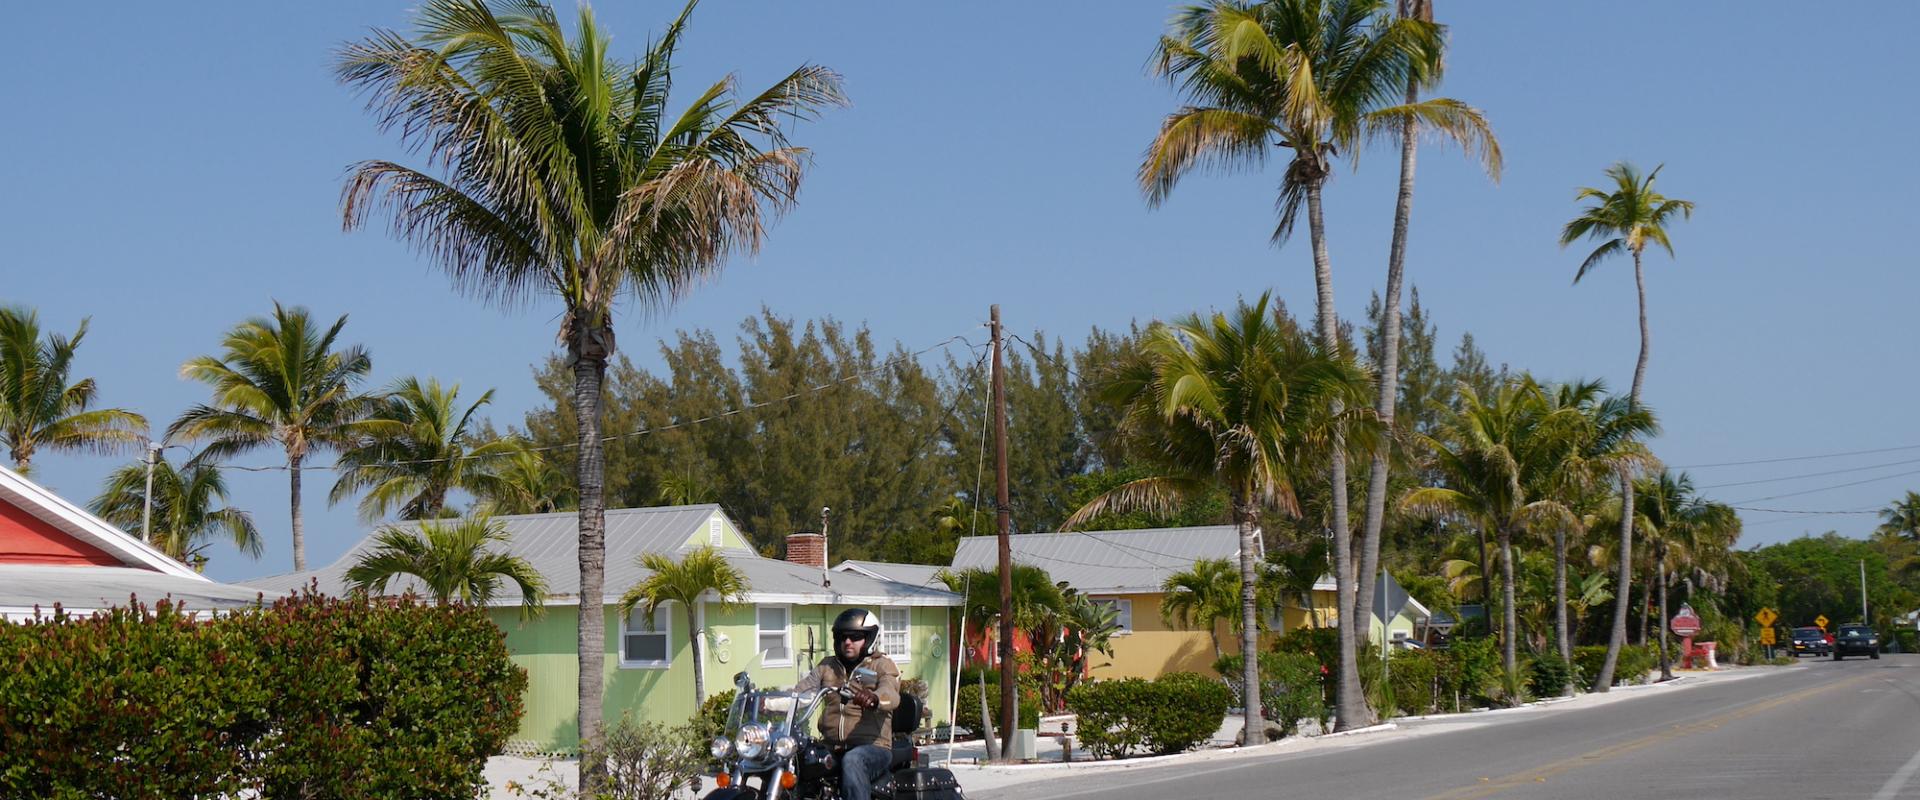 Motorradfahrer mit seiner Harley auf Sanibel Island mit Palmen und bunten Häusern